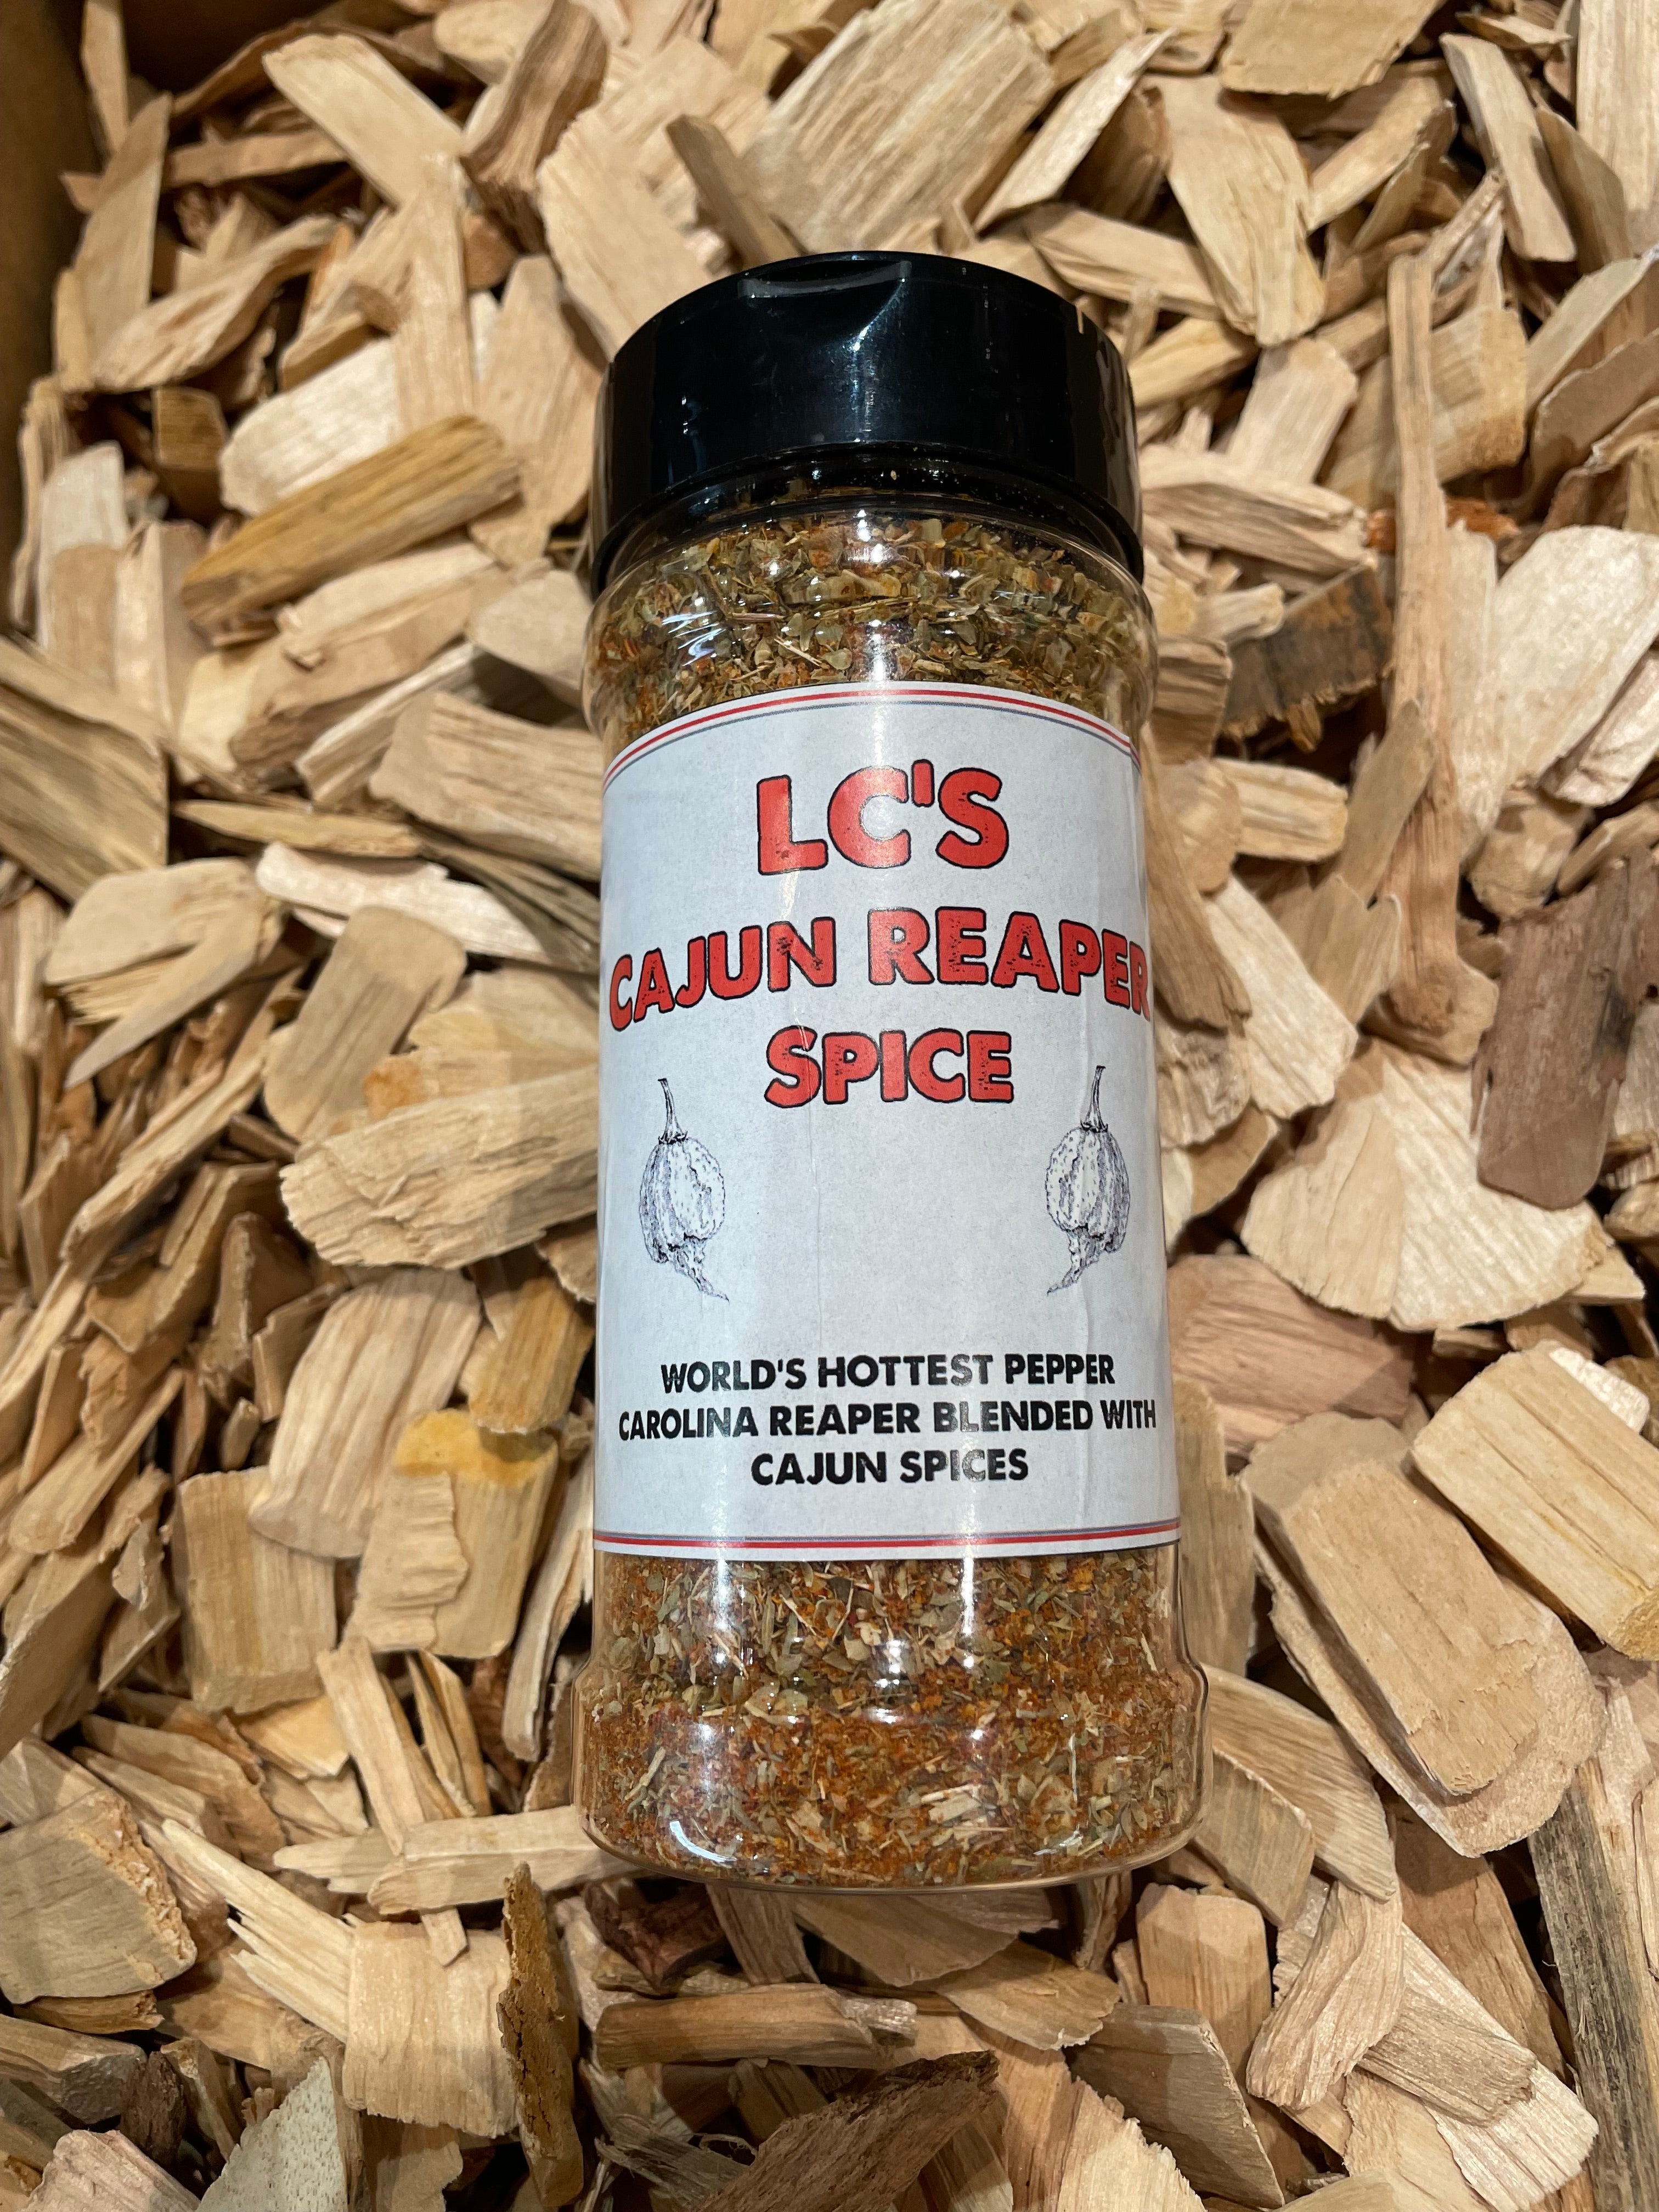 LC's Cajun Reaper Spice